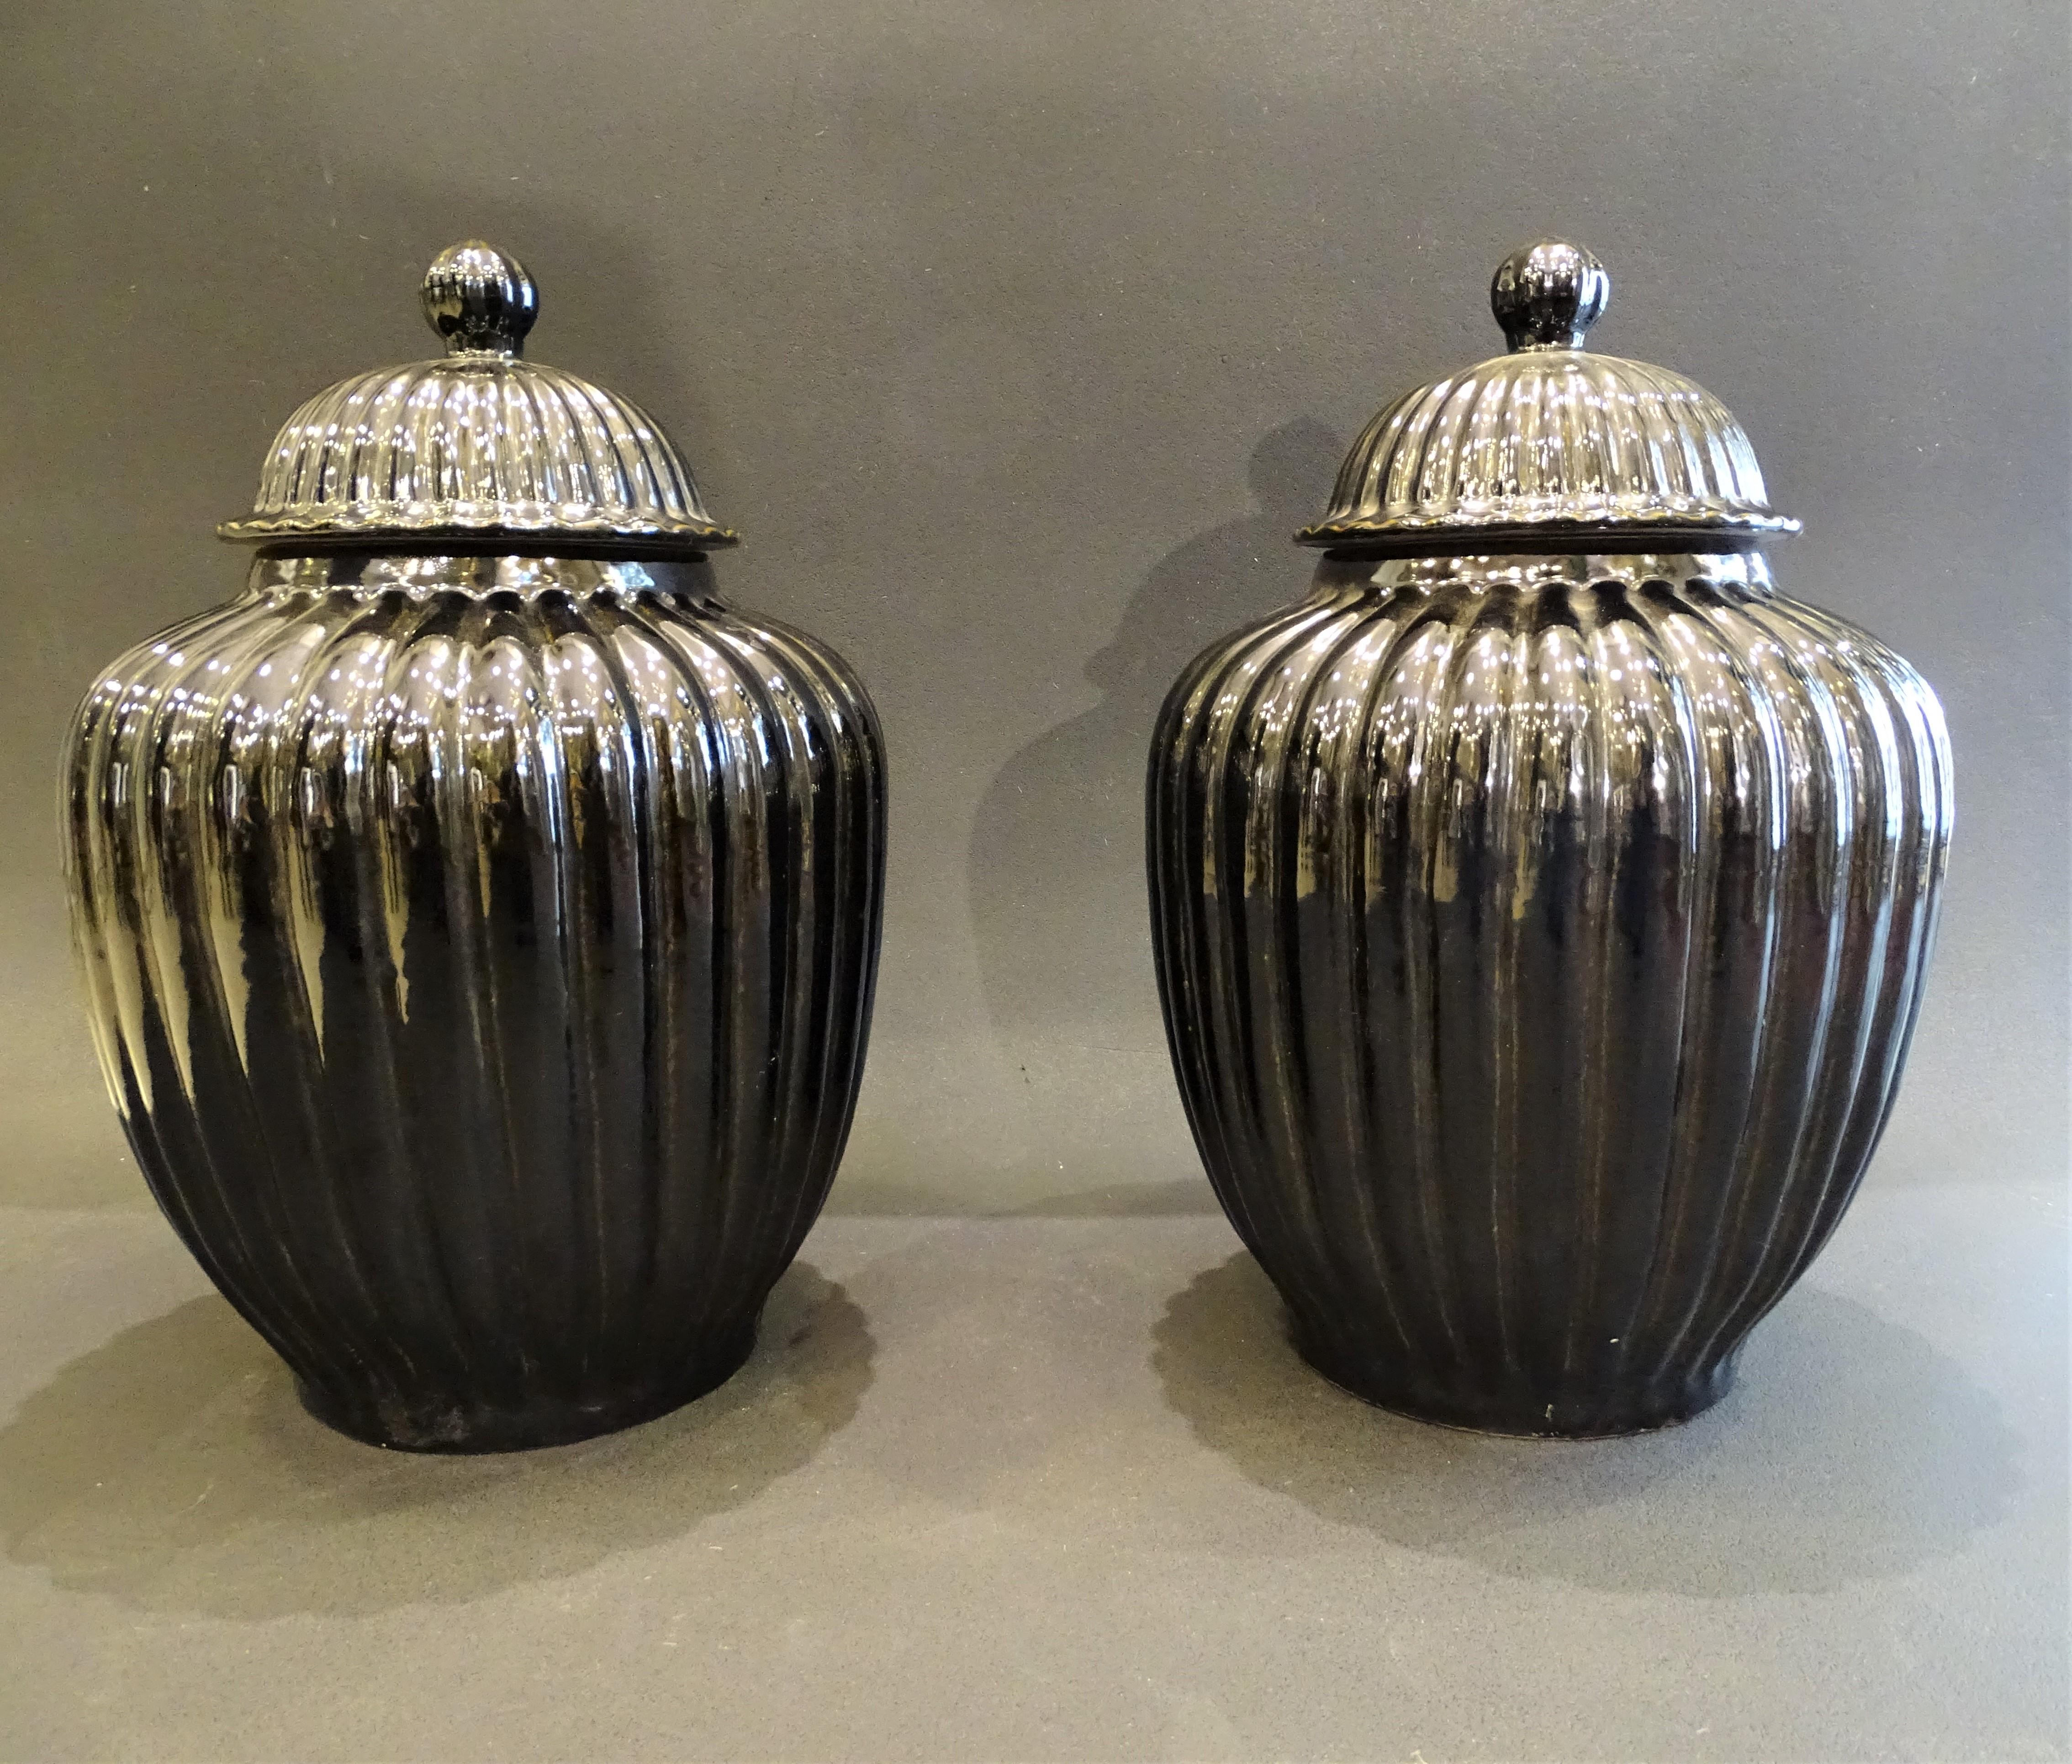 Pair of Black Ceramic Italian Vases, Bucaros, Centerpieces For Sale 3